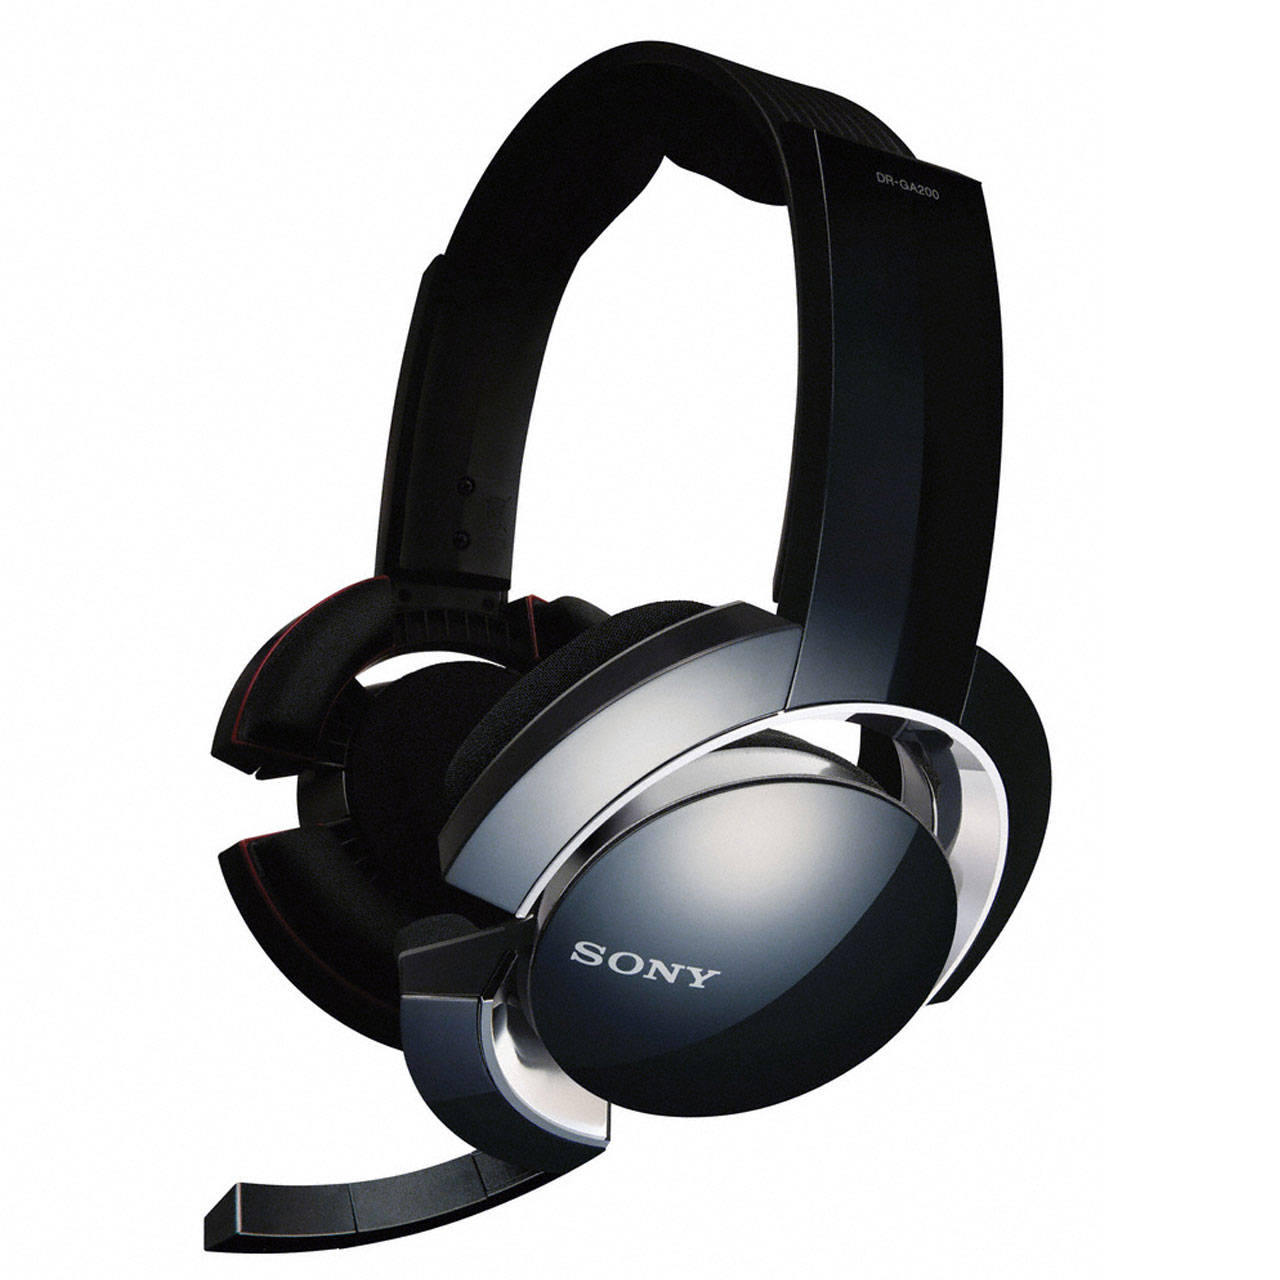 هدست گیمینگ سونی مدل Sony DR-GA200 PC Gaming Headset